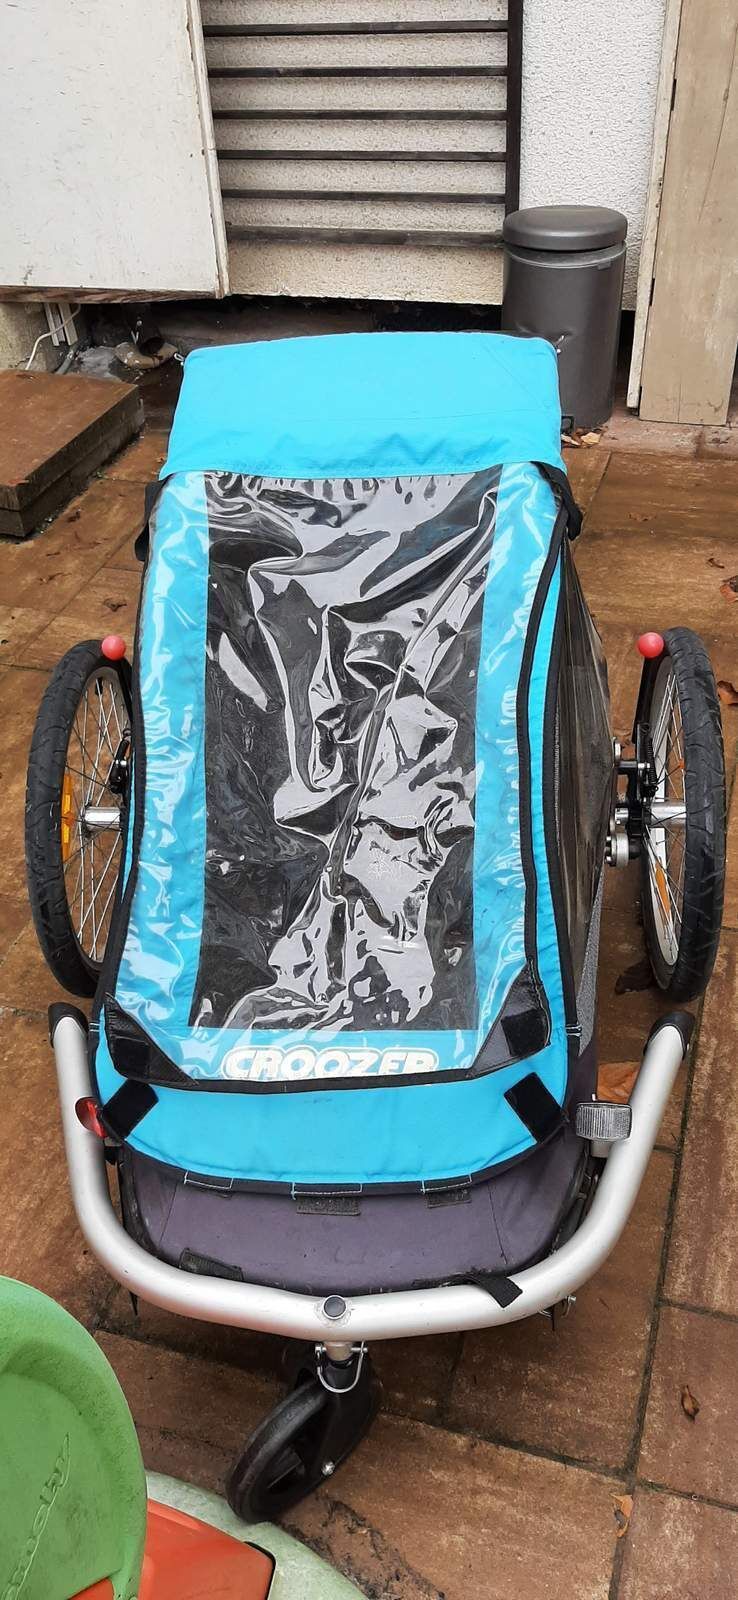 Prodám jednomístný odpružený skládací cyklo vozík Croozer modrý